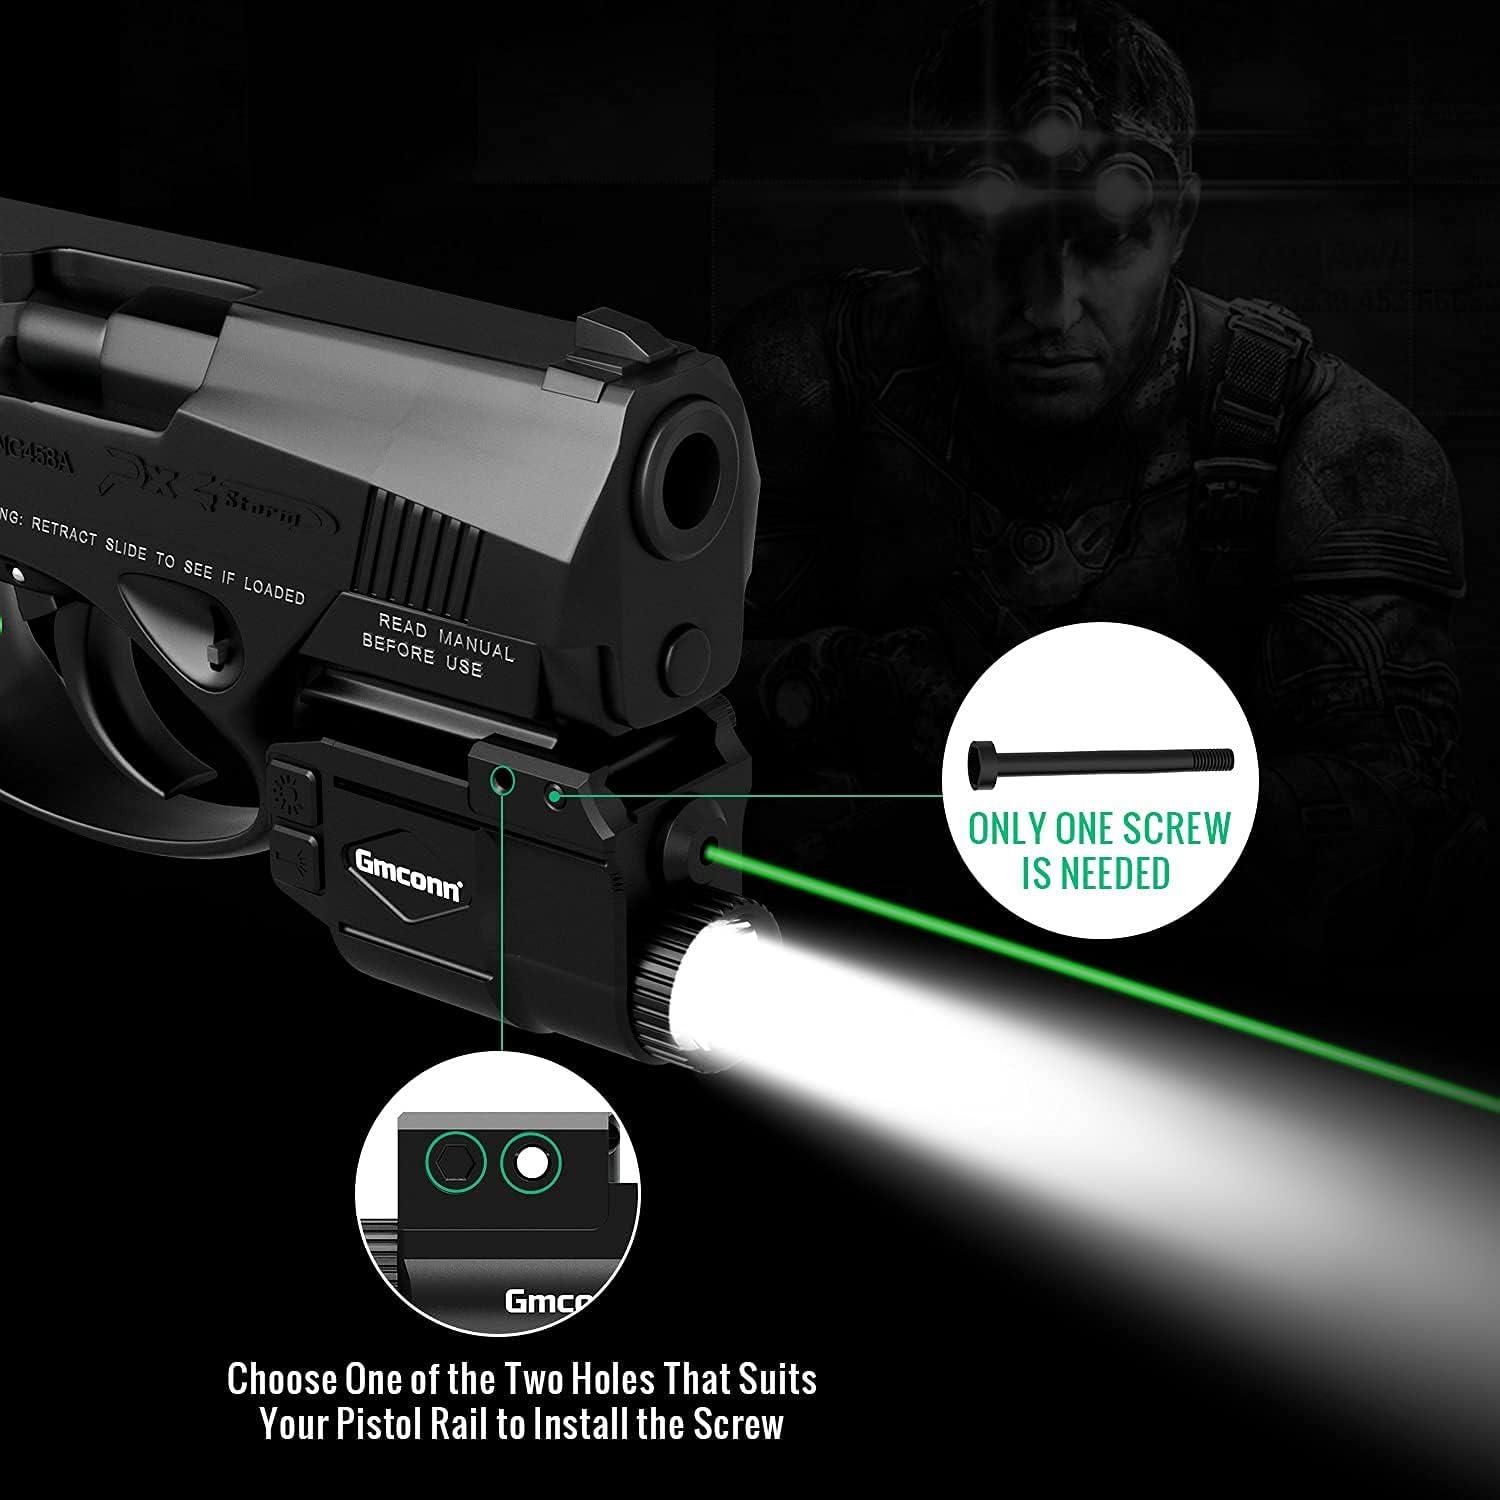  Gmconn Pistol Flashlight Green Laser White LED Light